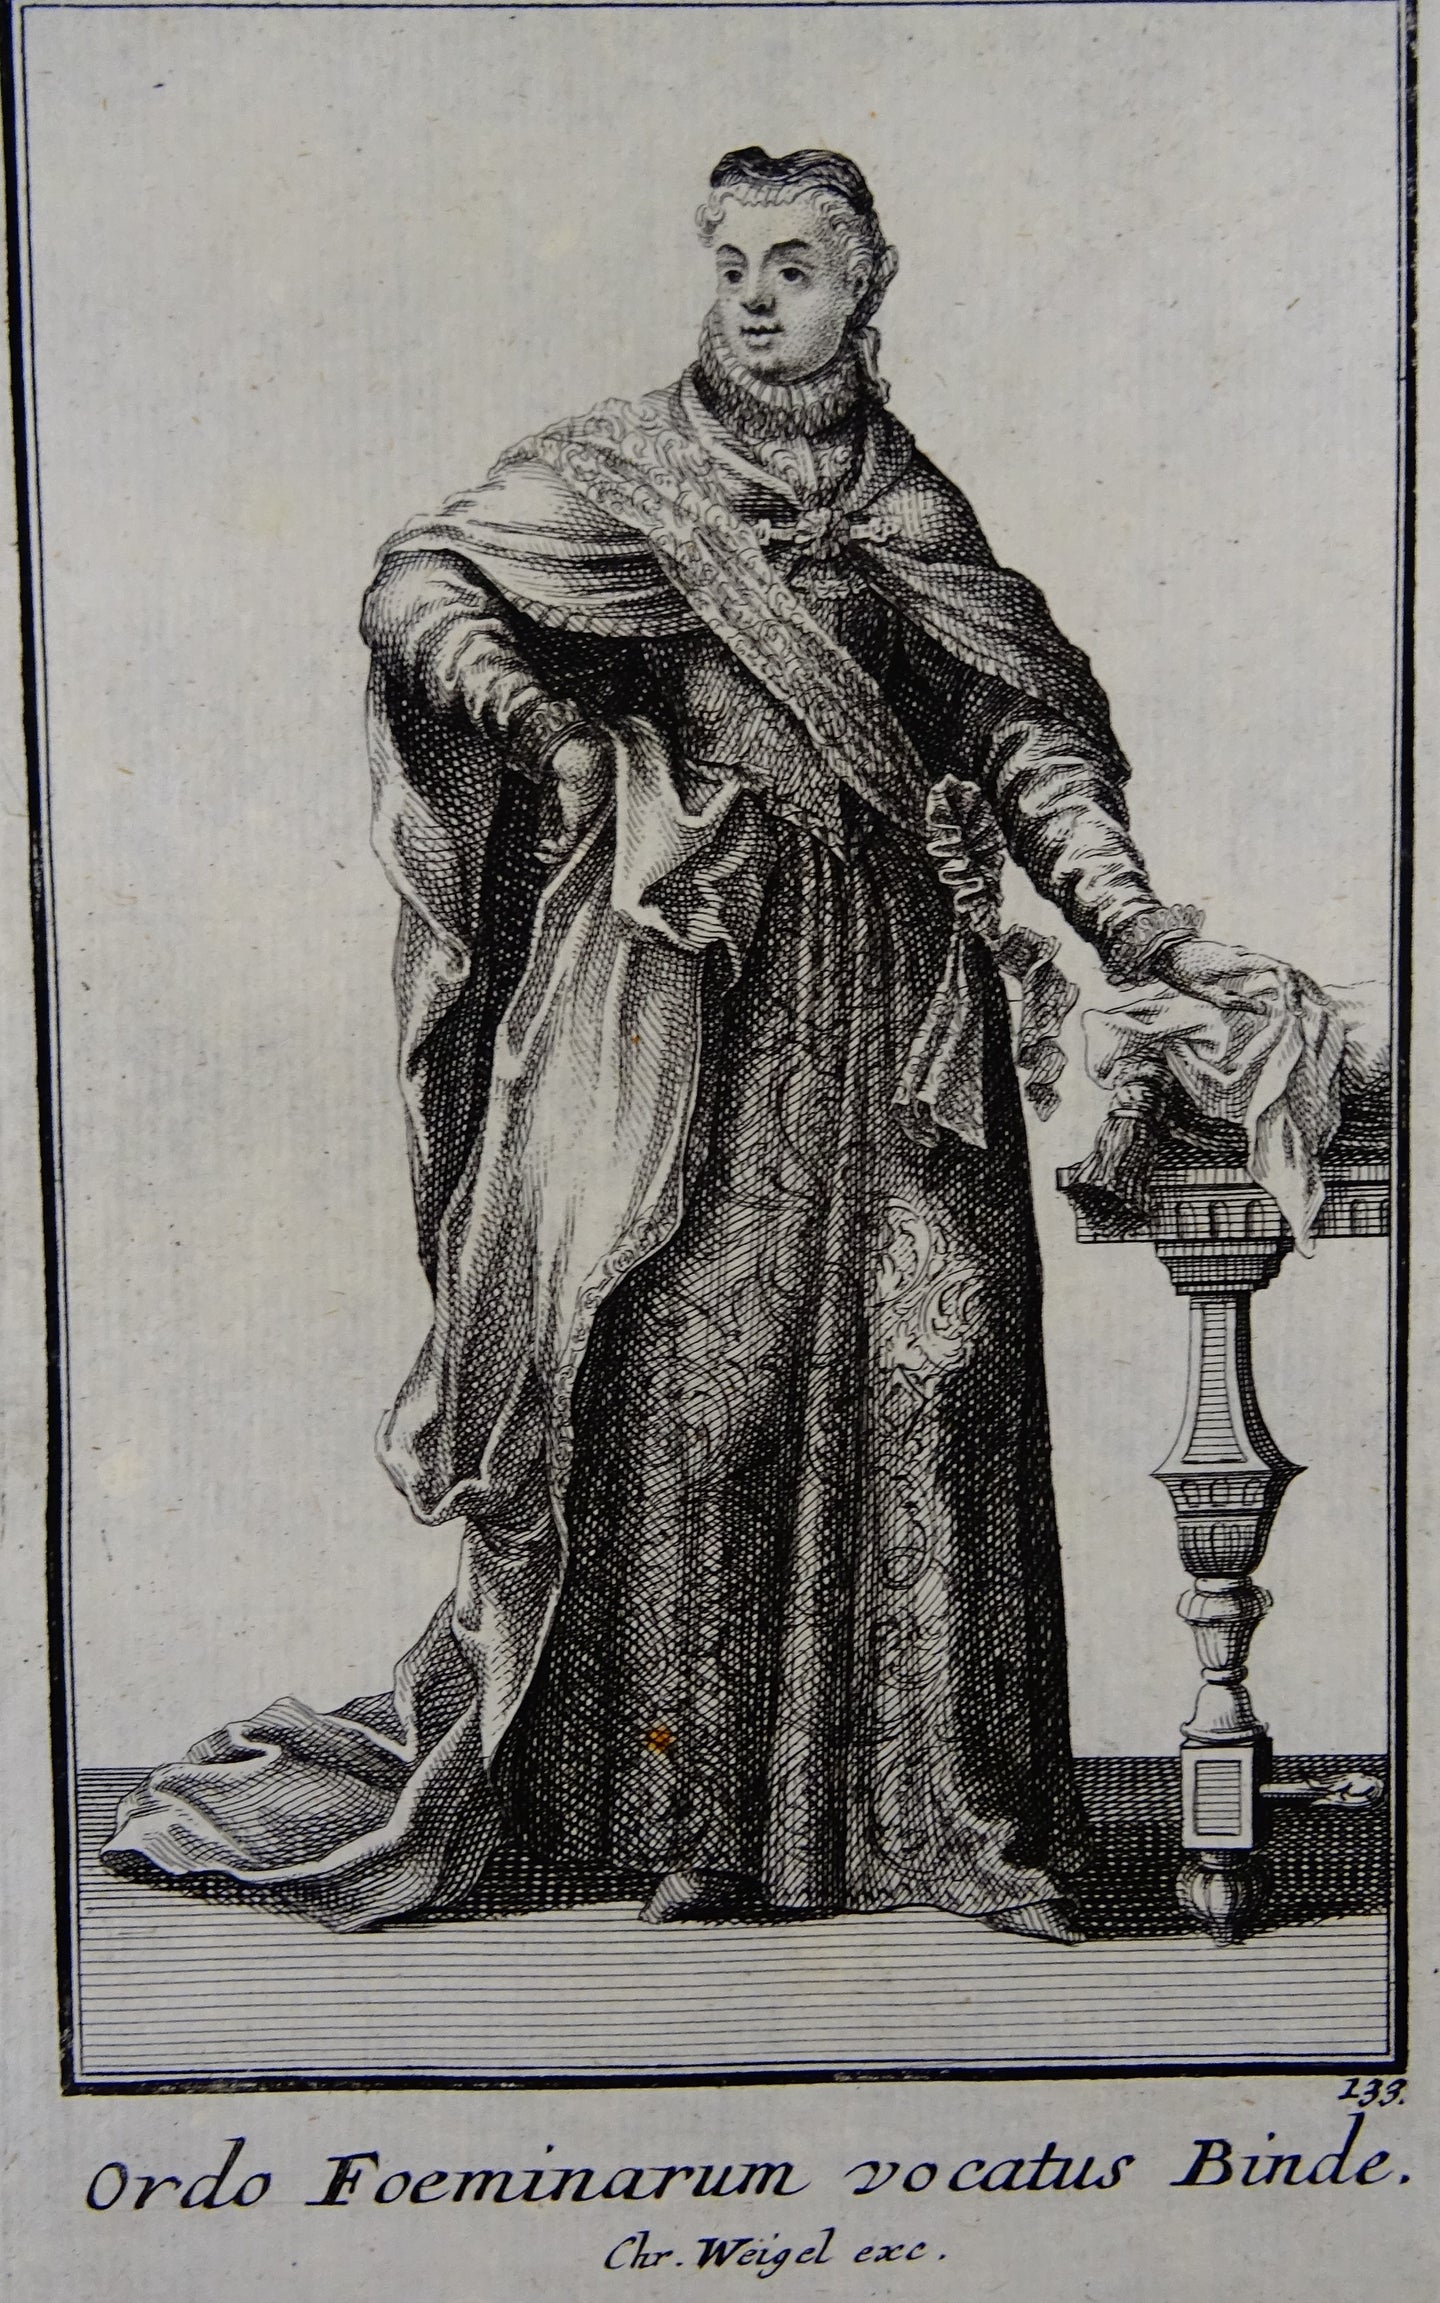 Ordo Foeminarum vocatus Binde - Ordinum equestrium et militarium - ca 1711